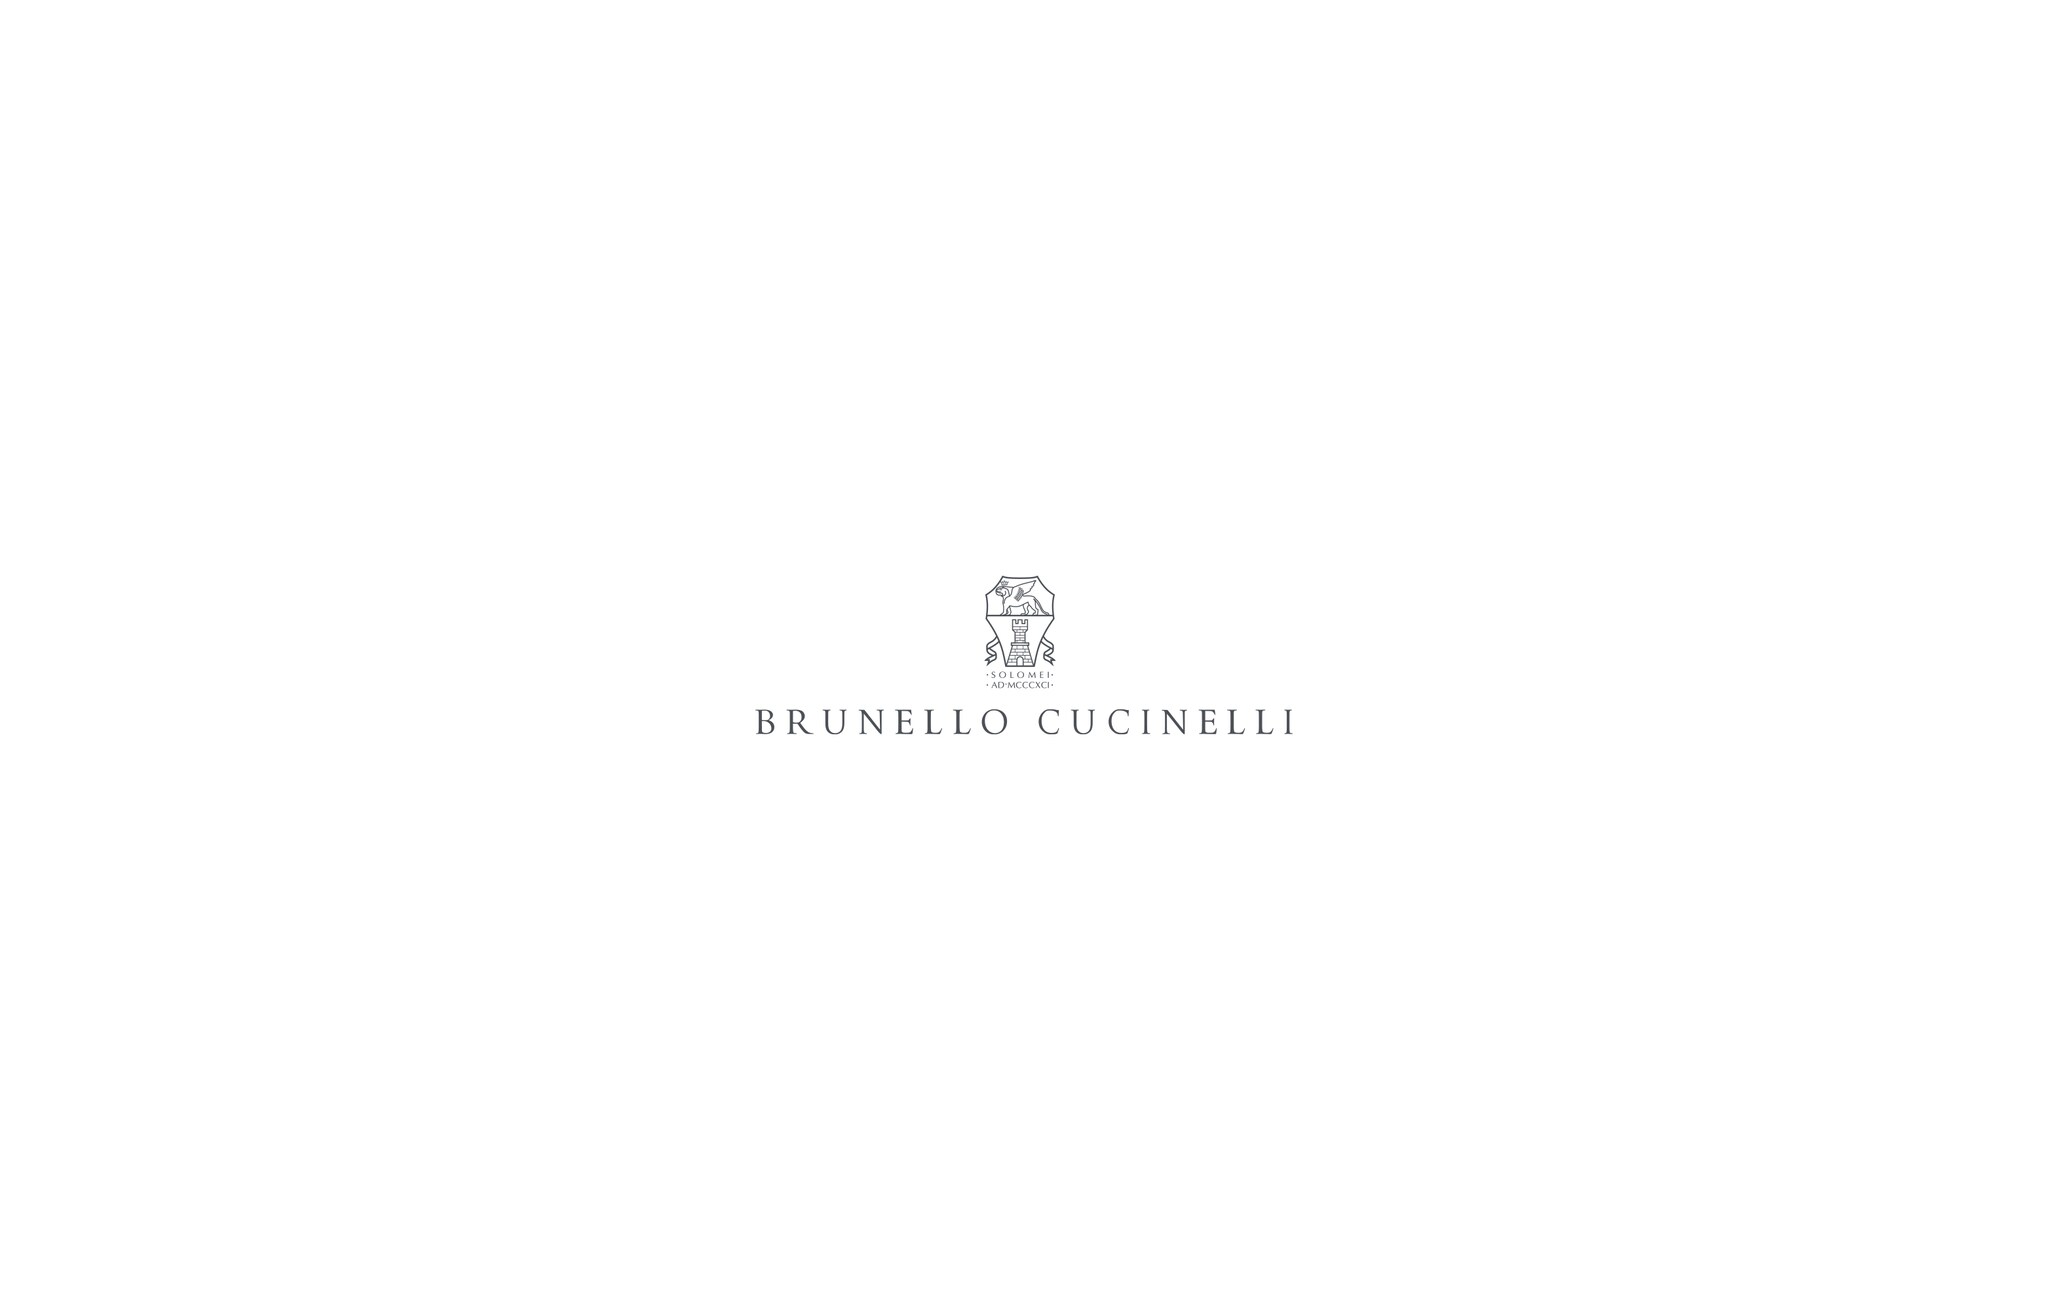  羊驼毛针织衣 粉红色 女款 - Brunello Cucinelli 